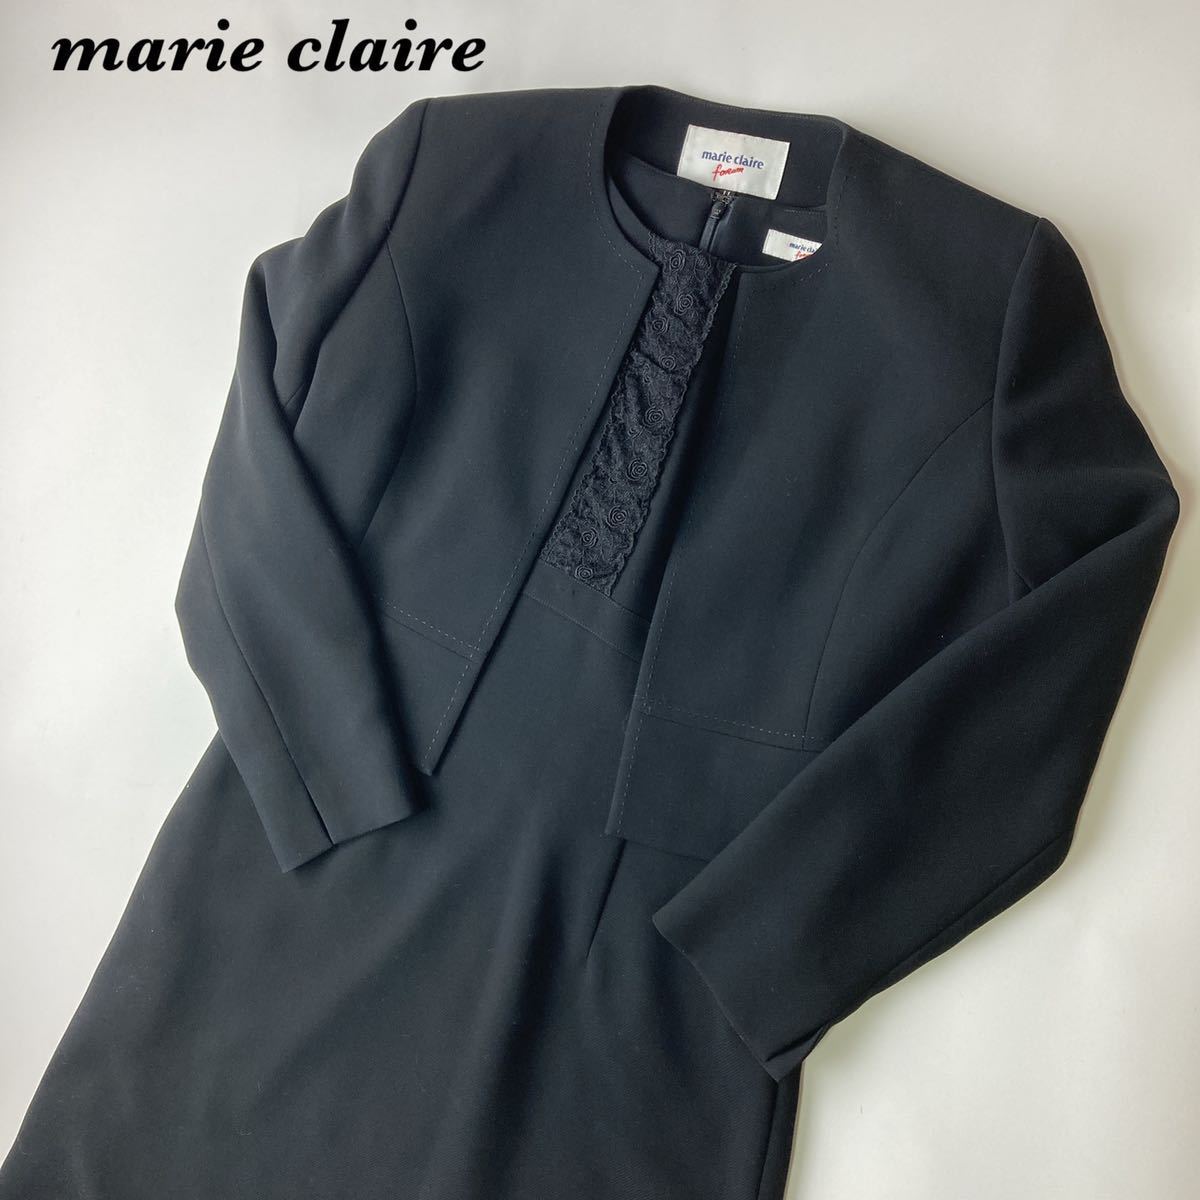 marie claire マリクレール フォーマル ワンピーススーツ ブラックフォーマルスーツ